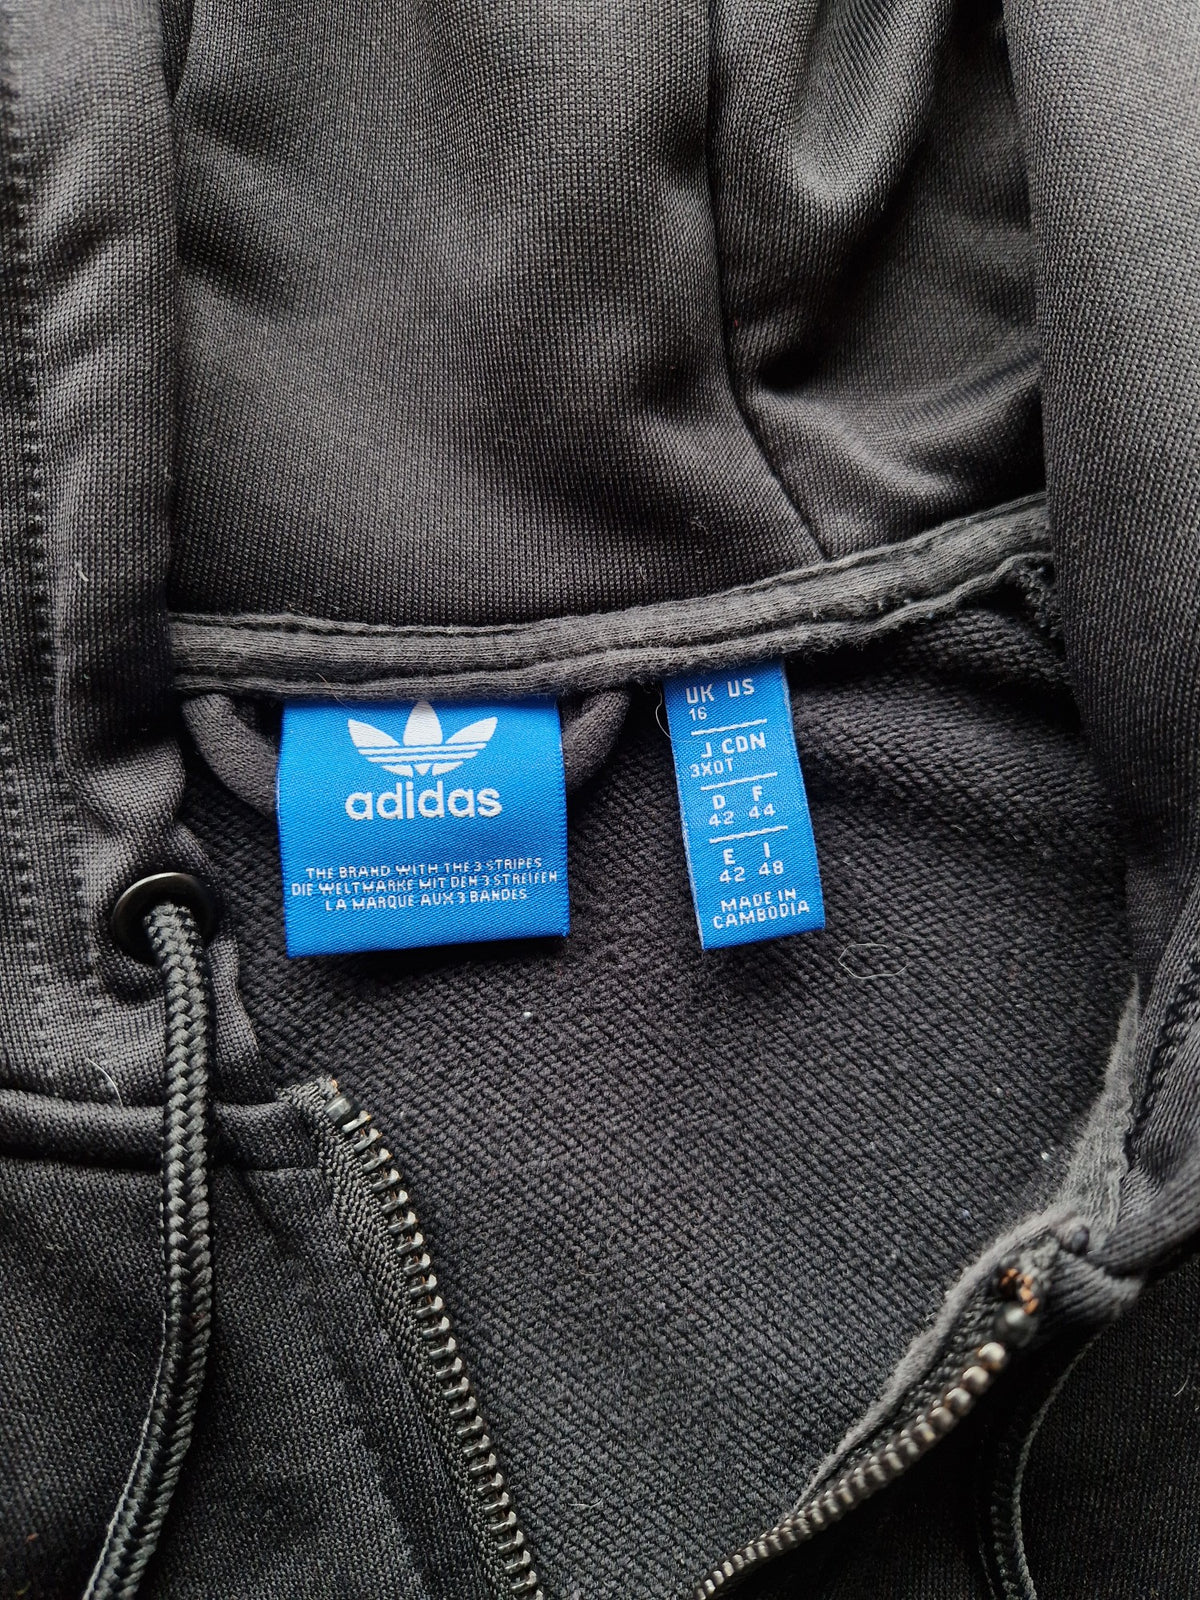 Adidas Firebire Track Jacket - Size UK 16